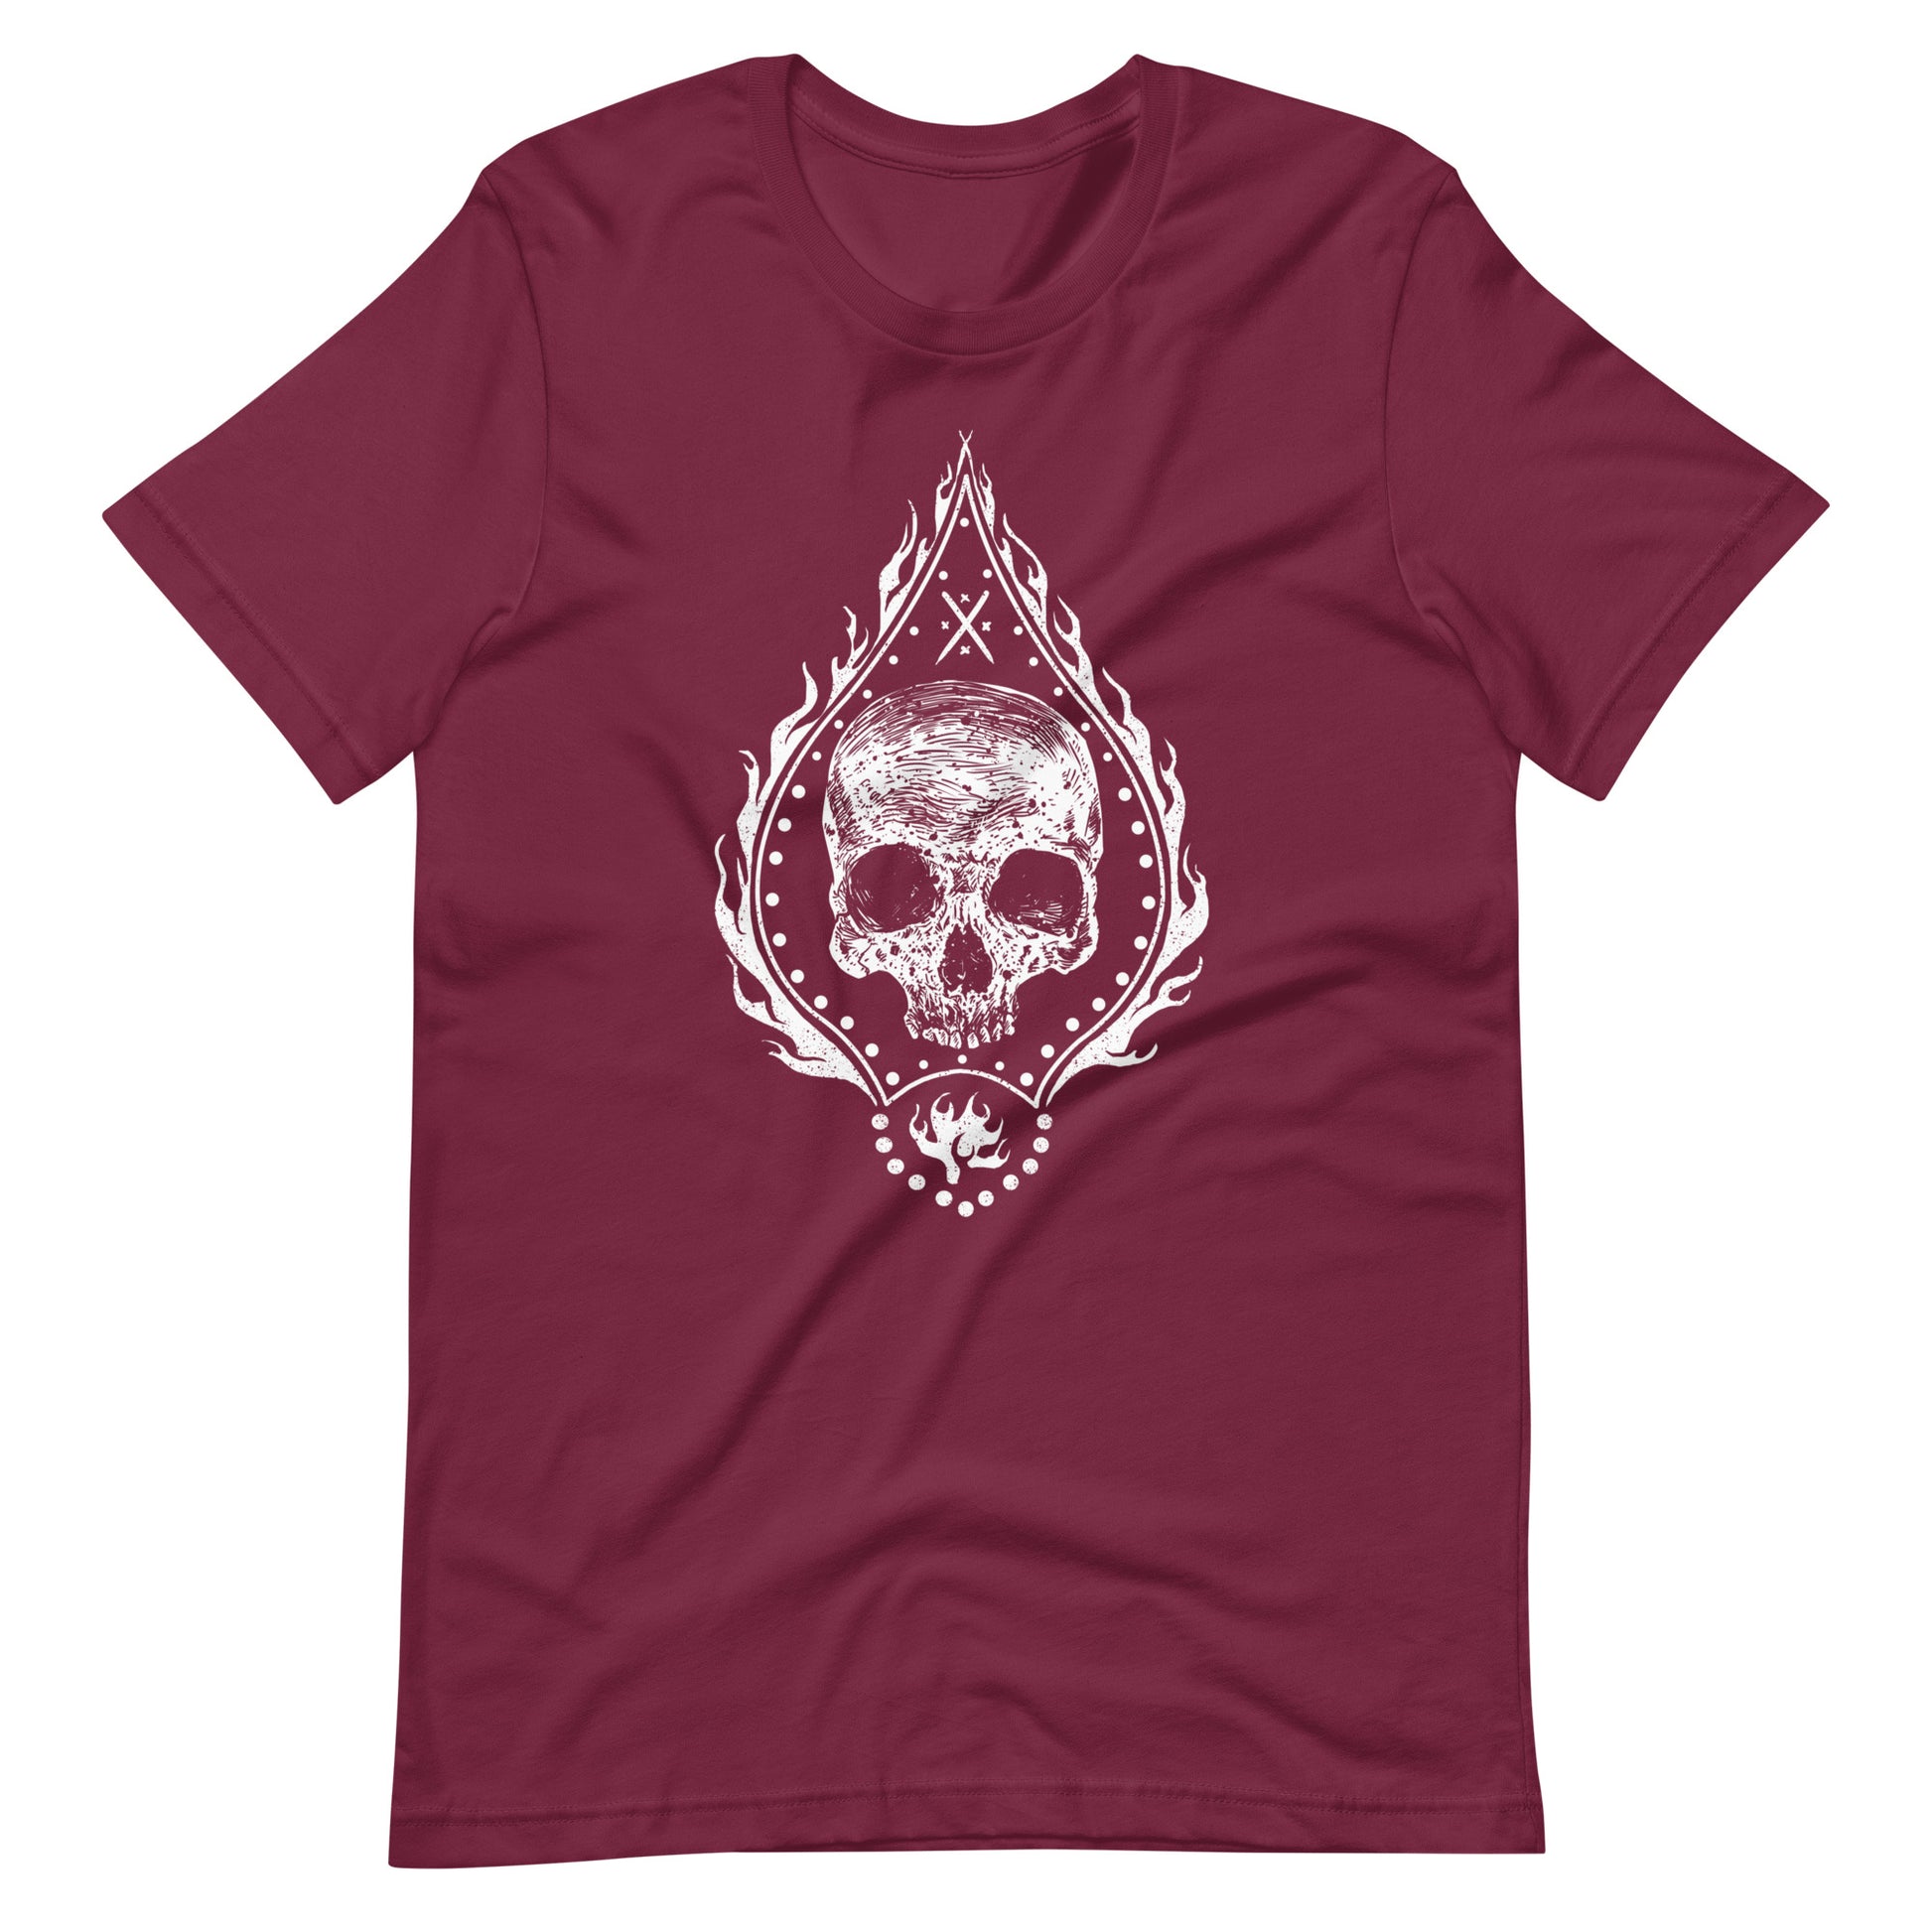 Fire Skull White - Men's t-shirt - Maroon Front